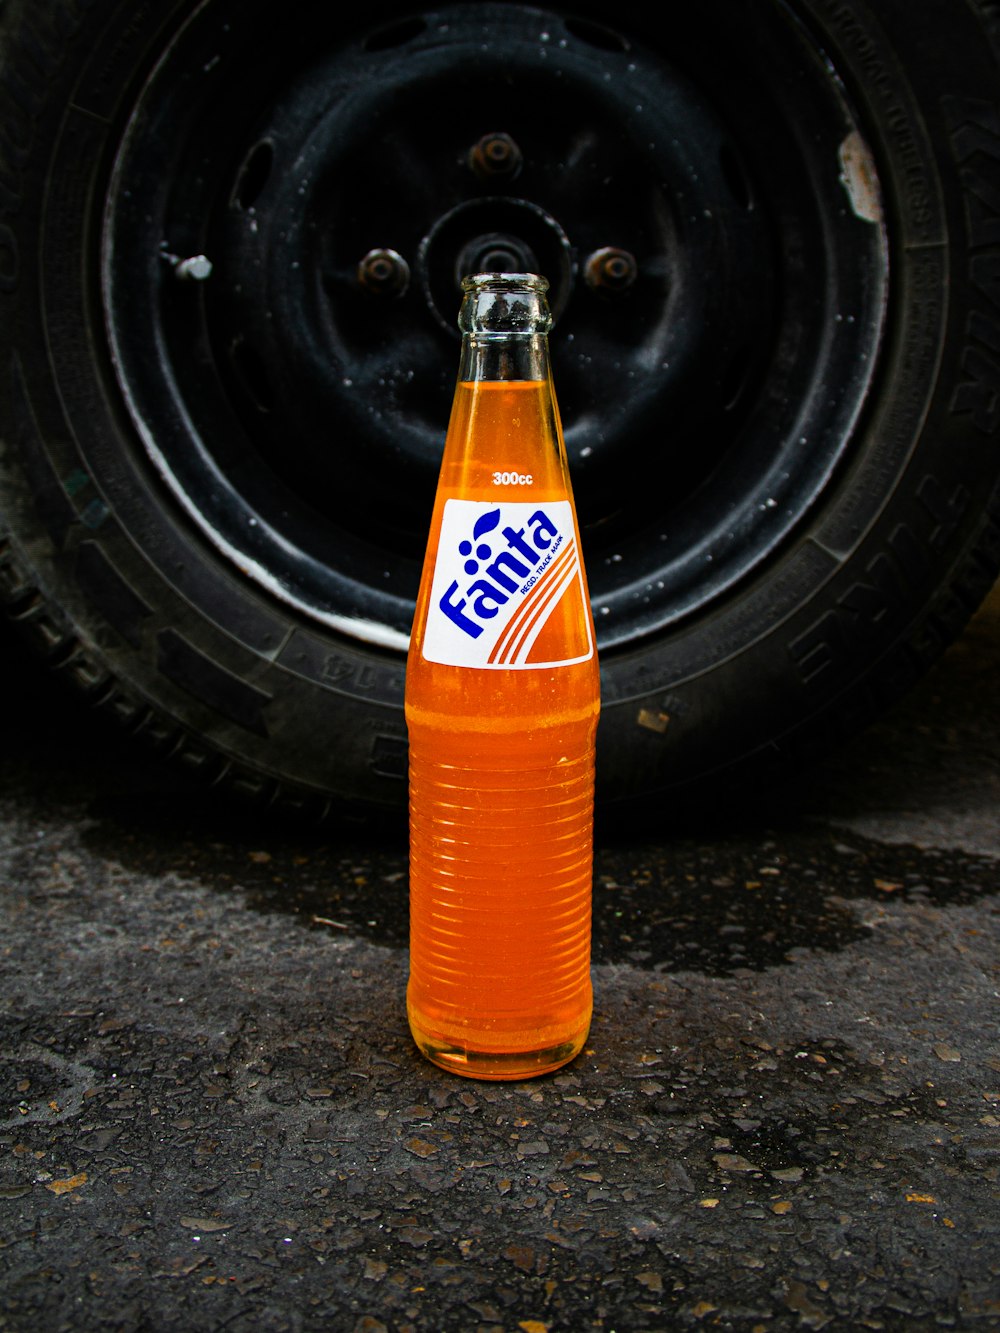 Eine Flasche Soda sitzt auf dem Boden neben einem Reifen